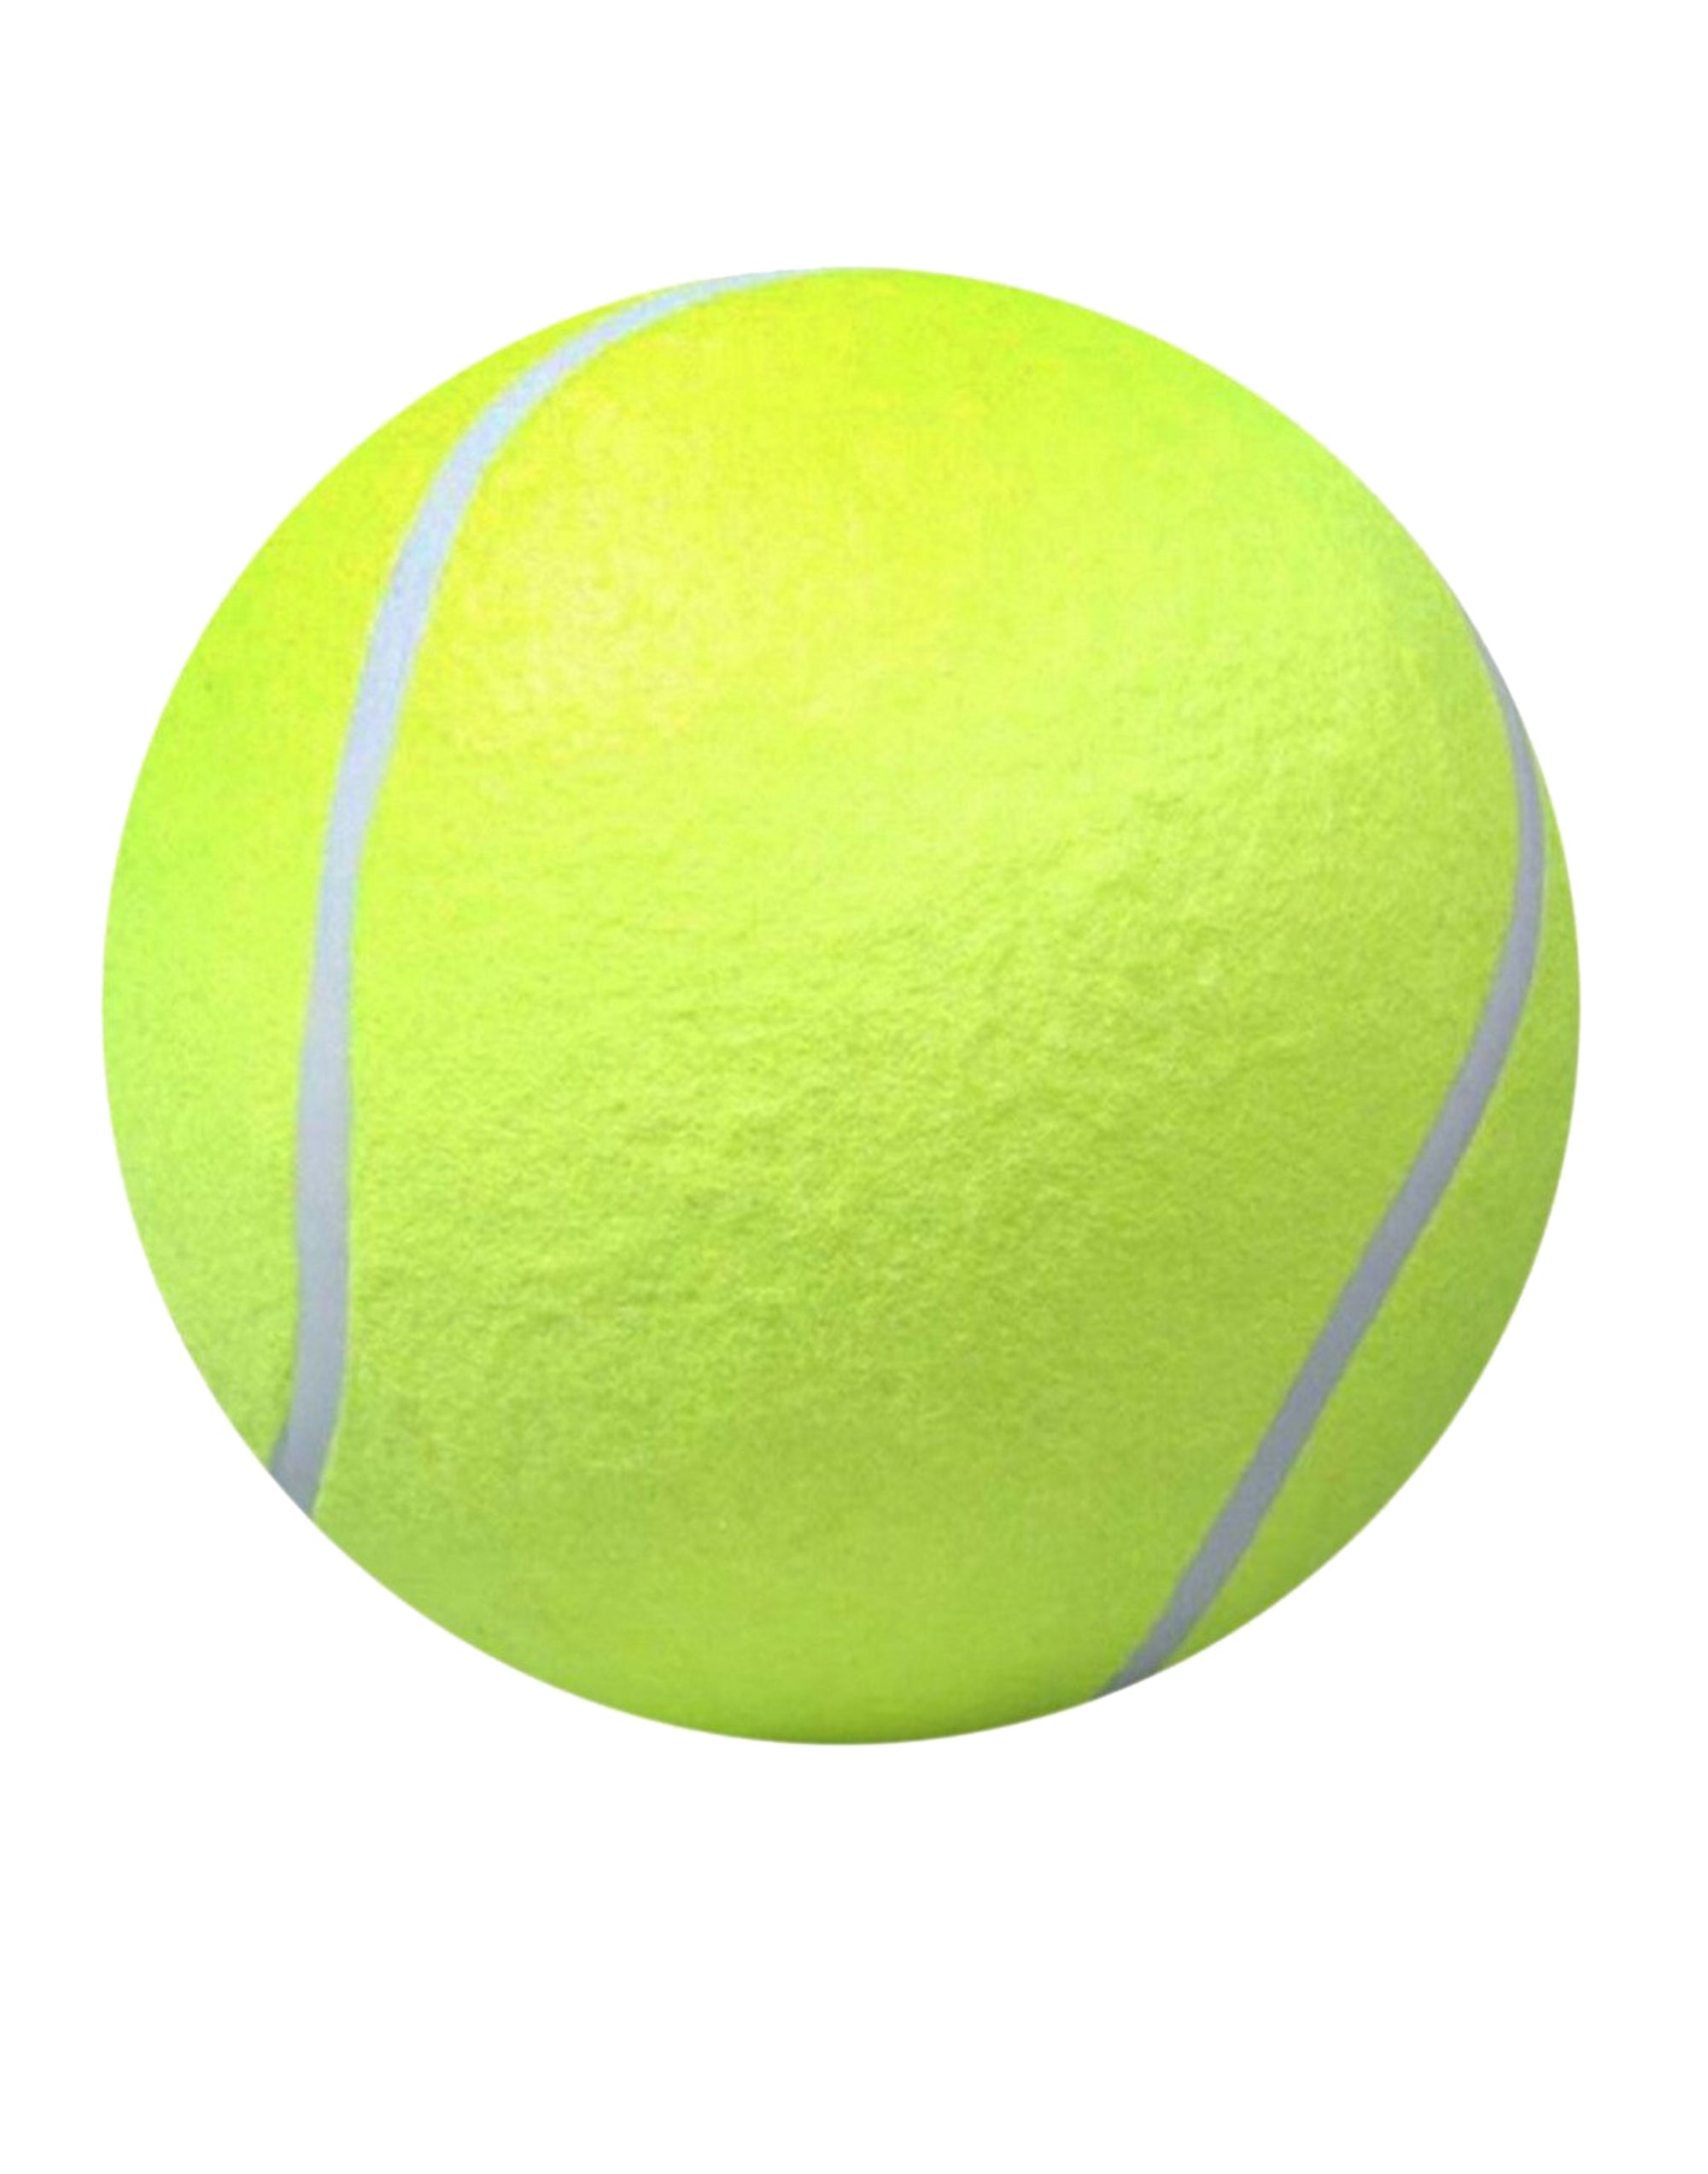 WORLD'S SMALLEST TENNIS BALL